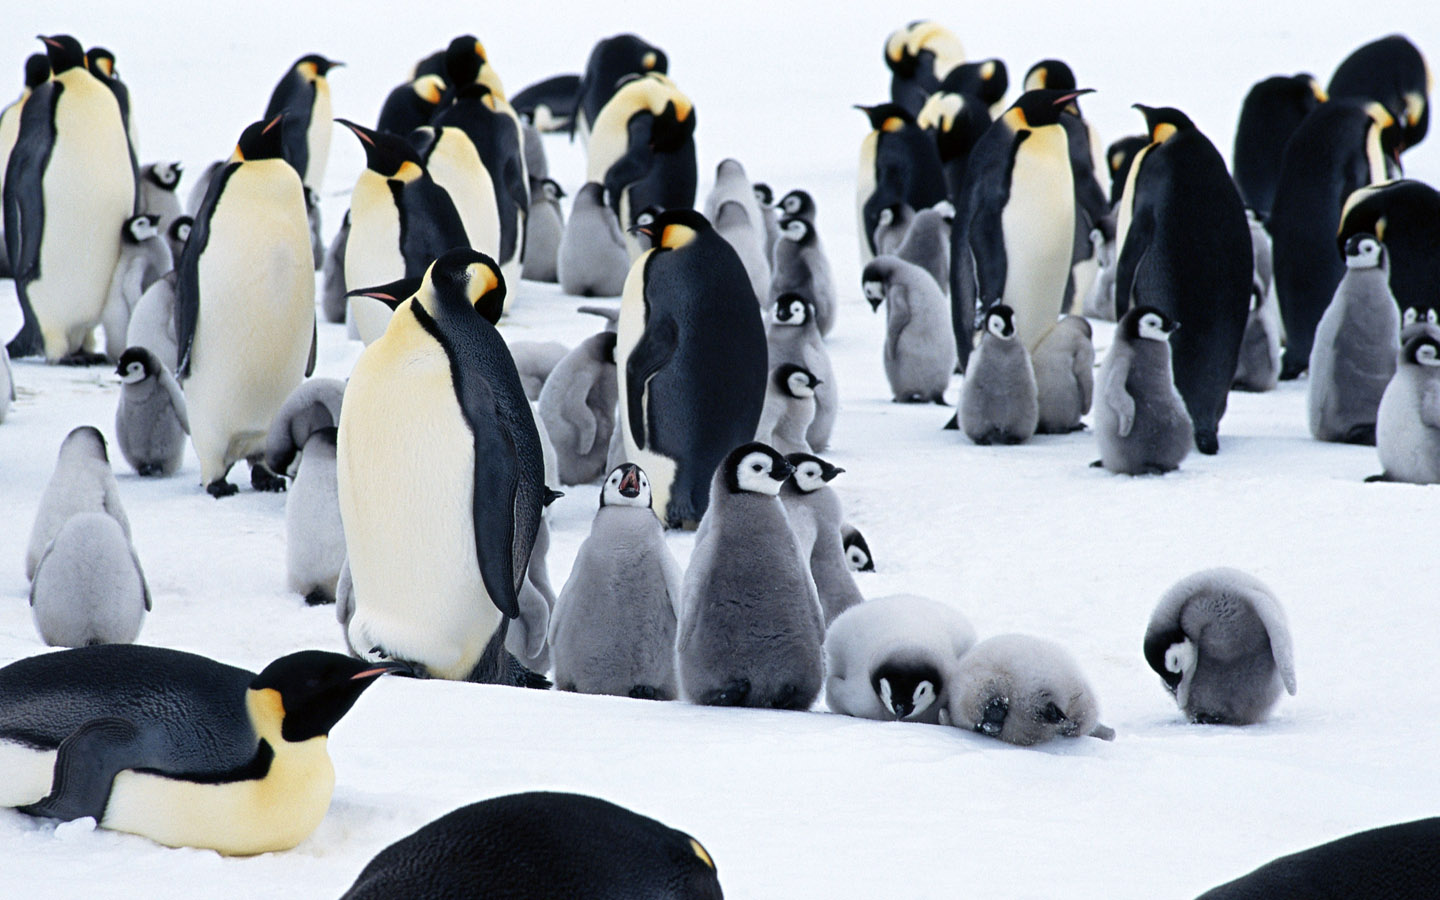 壁纸1440x900企鹅写真 1 2壁纸 分类动物 企鹅写真 第一辑壁纸 分类动物 企鹅写真 第一辑图片 分类动物 企鹅写真 第一辑素材 动物壁纸 动物图库 动物图片素材桌面壁纸